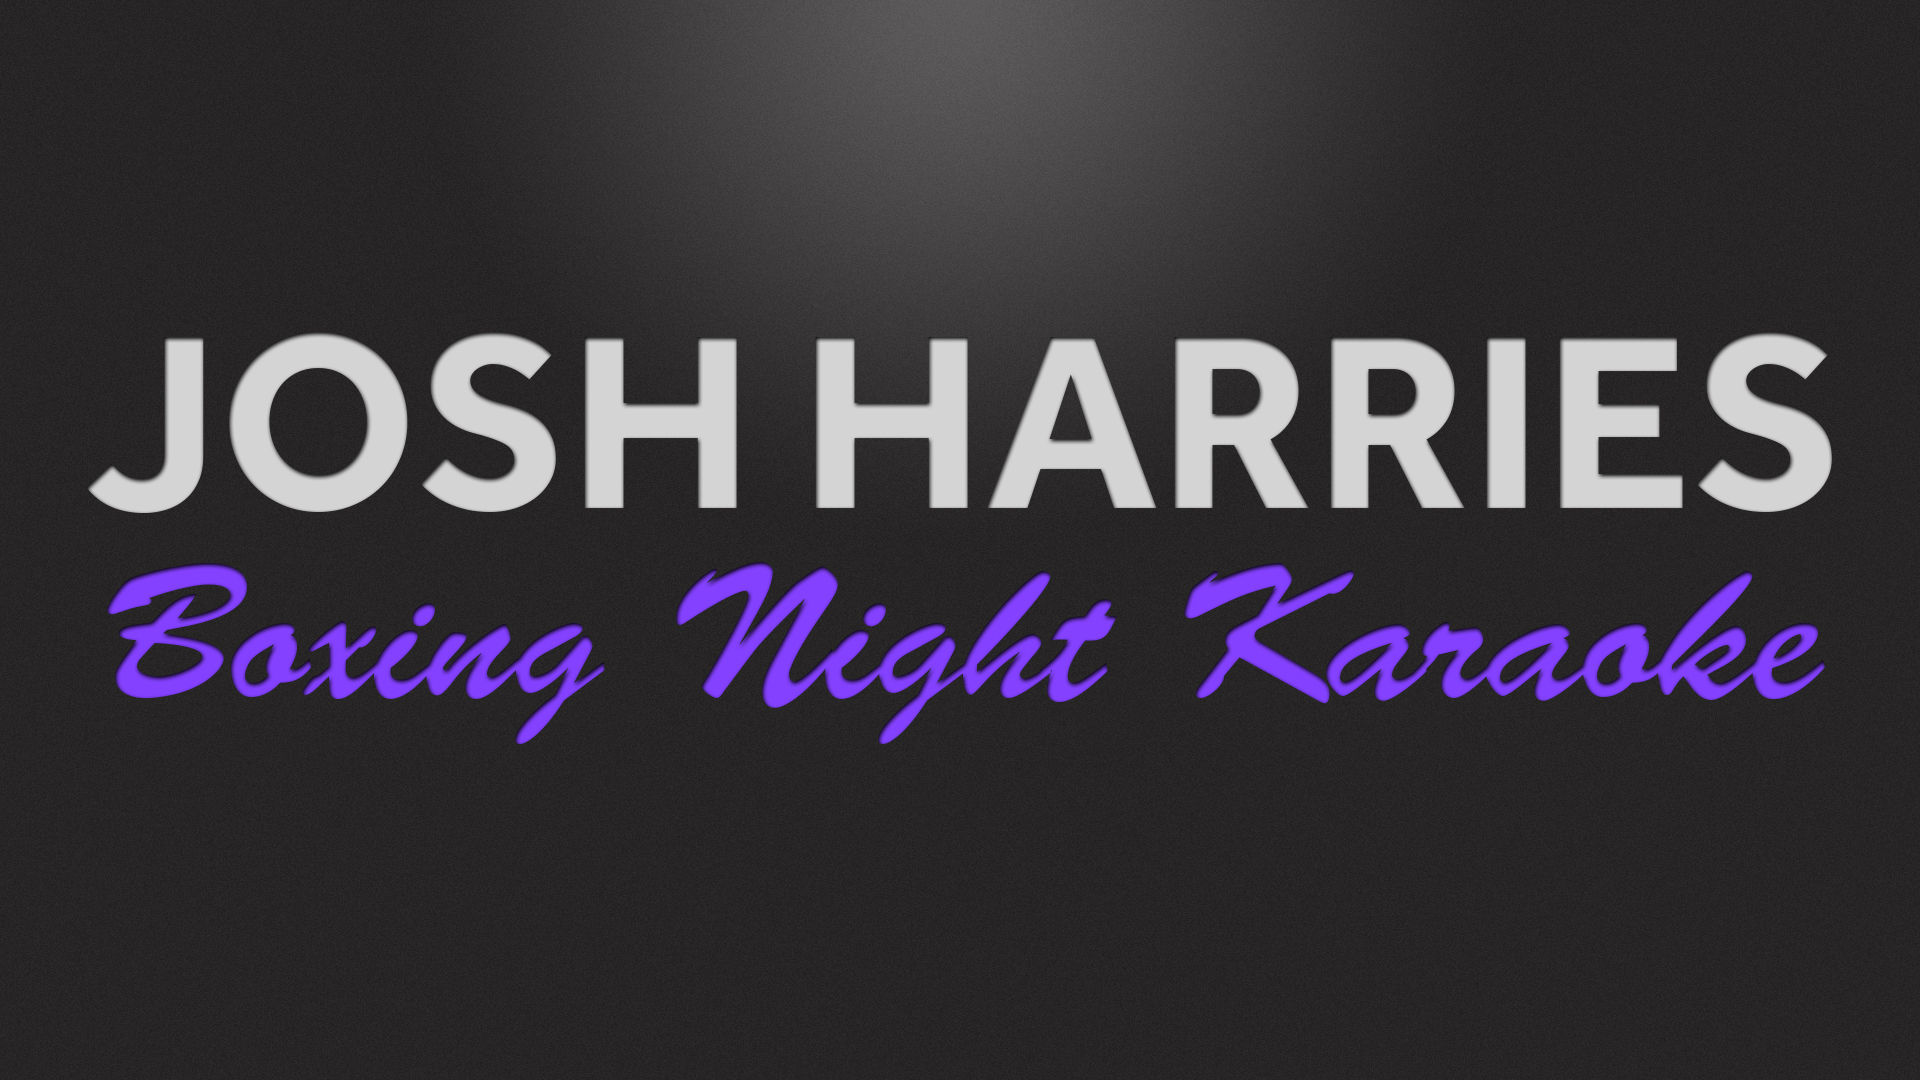 Josh Harries Karaoke BN.jpg